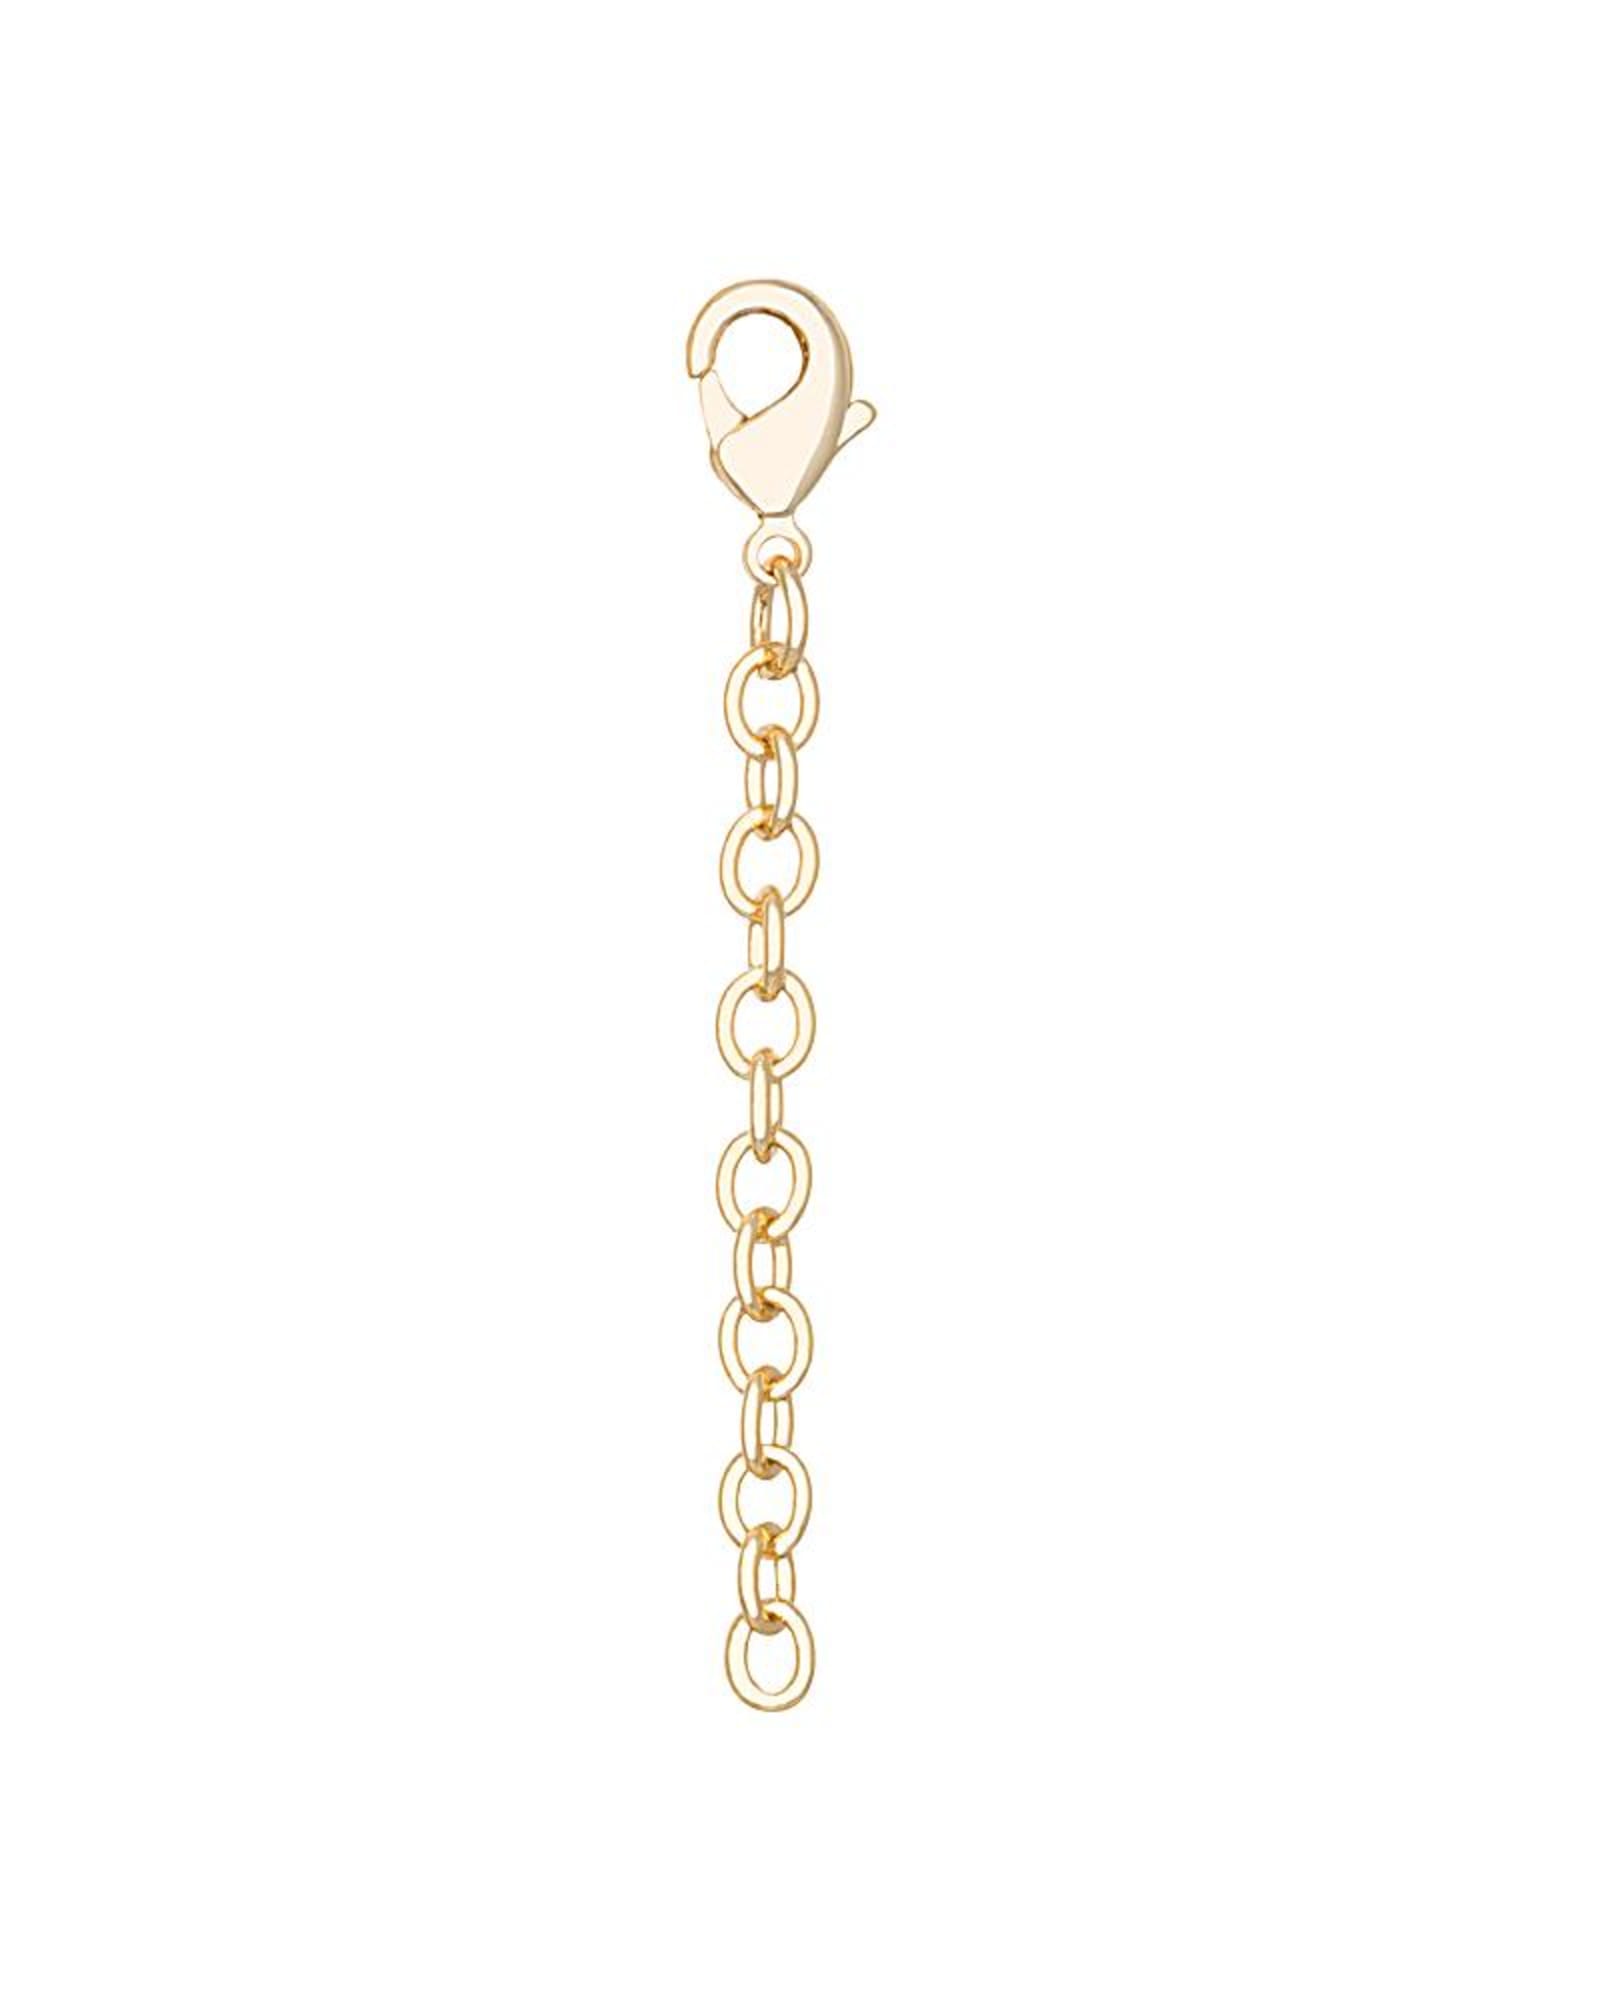 Necklace or Bracelet Extender in 14K Gold Plate, 14K Rose Gold